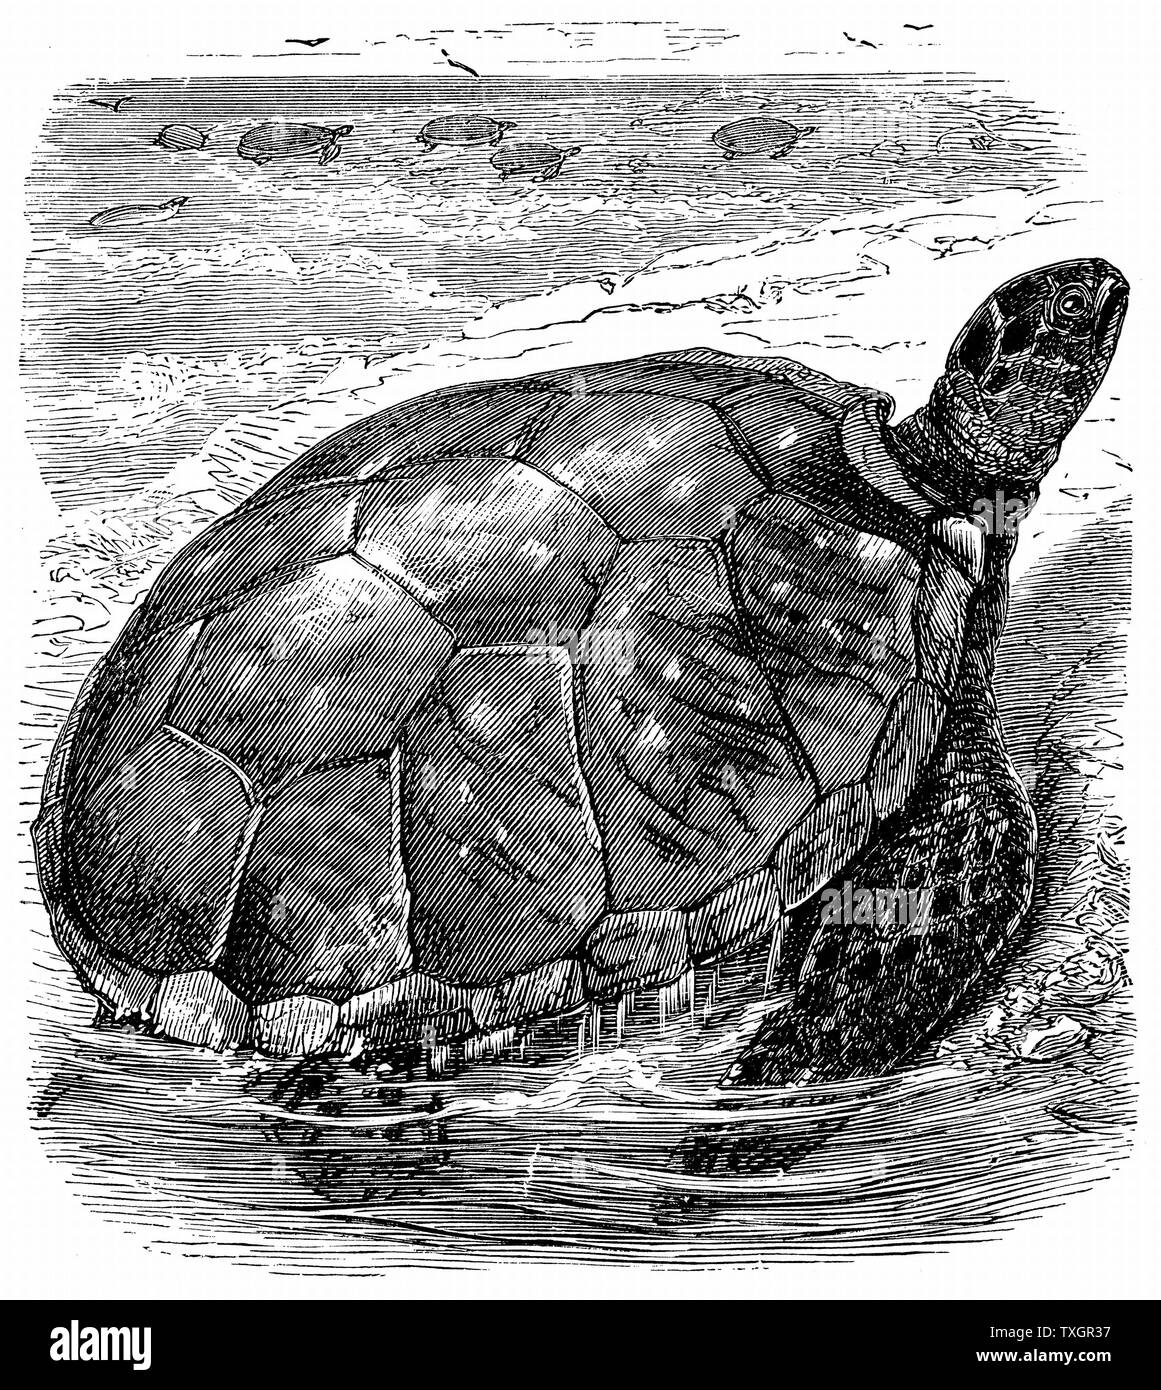 La tortue verte (Chelonia mydas) - comestibles - la viande de tortue très apprécié. Les tortues comestibles importés vivants en Europe comme une table de délicatesse c.1890 la gravure sur bois Banque D'Images